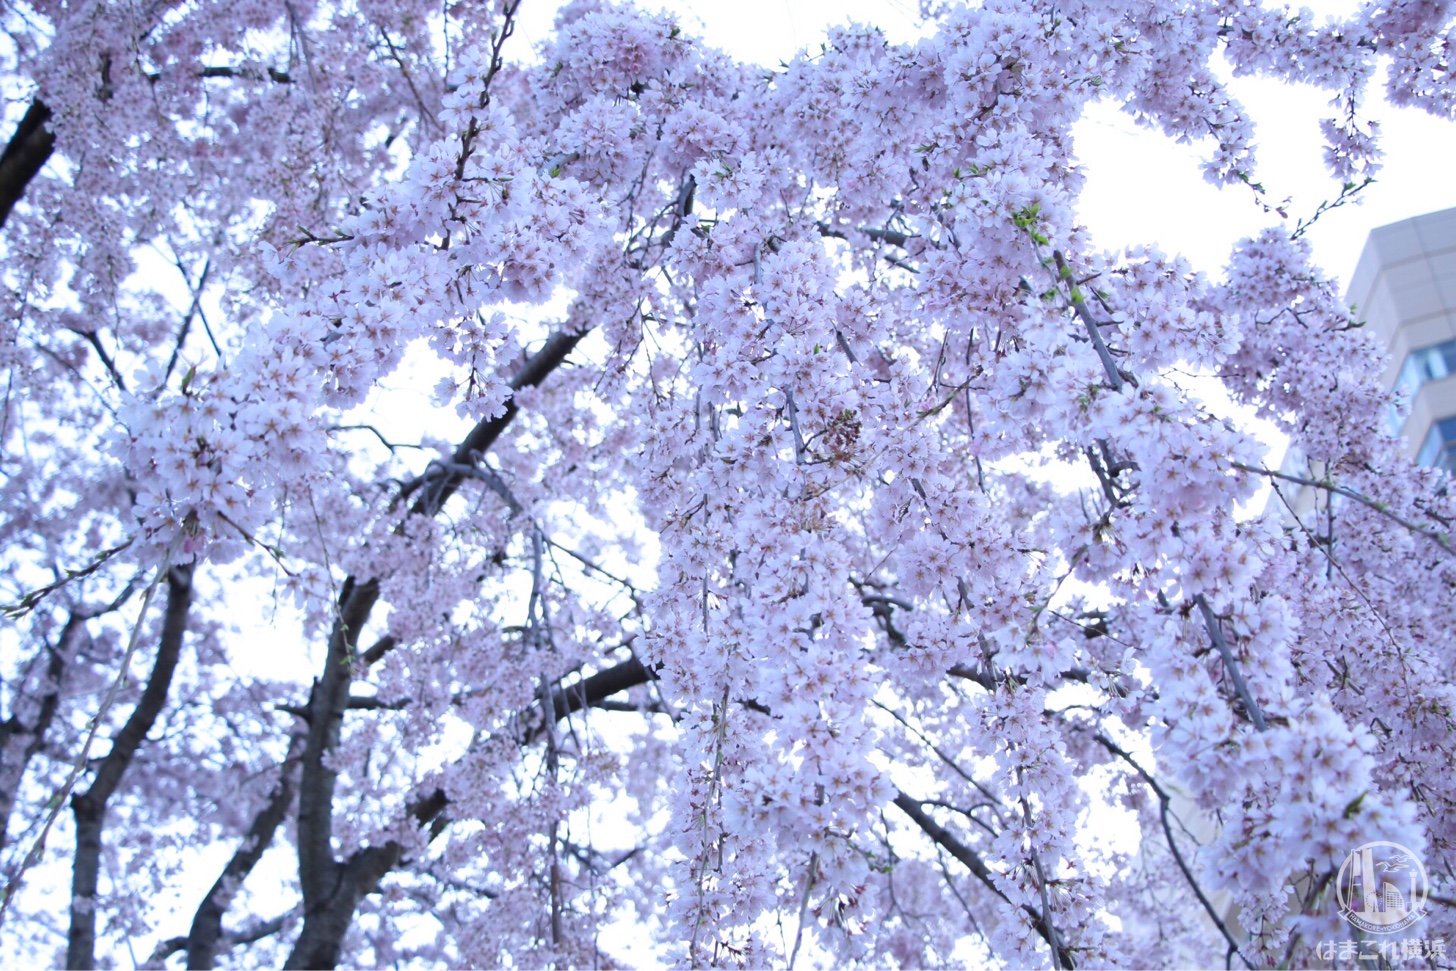 山下公園 満開のしだれ桜